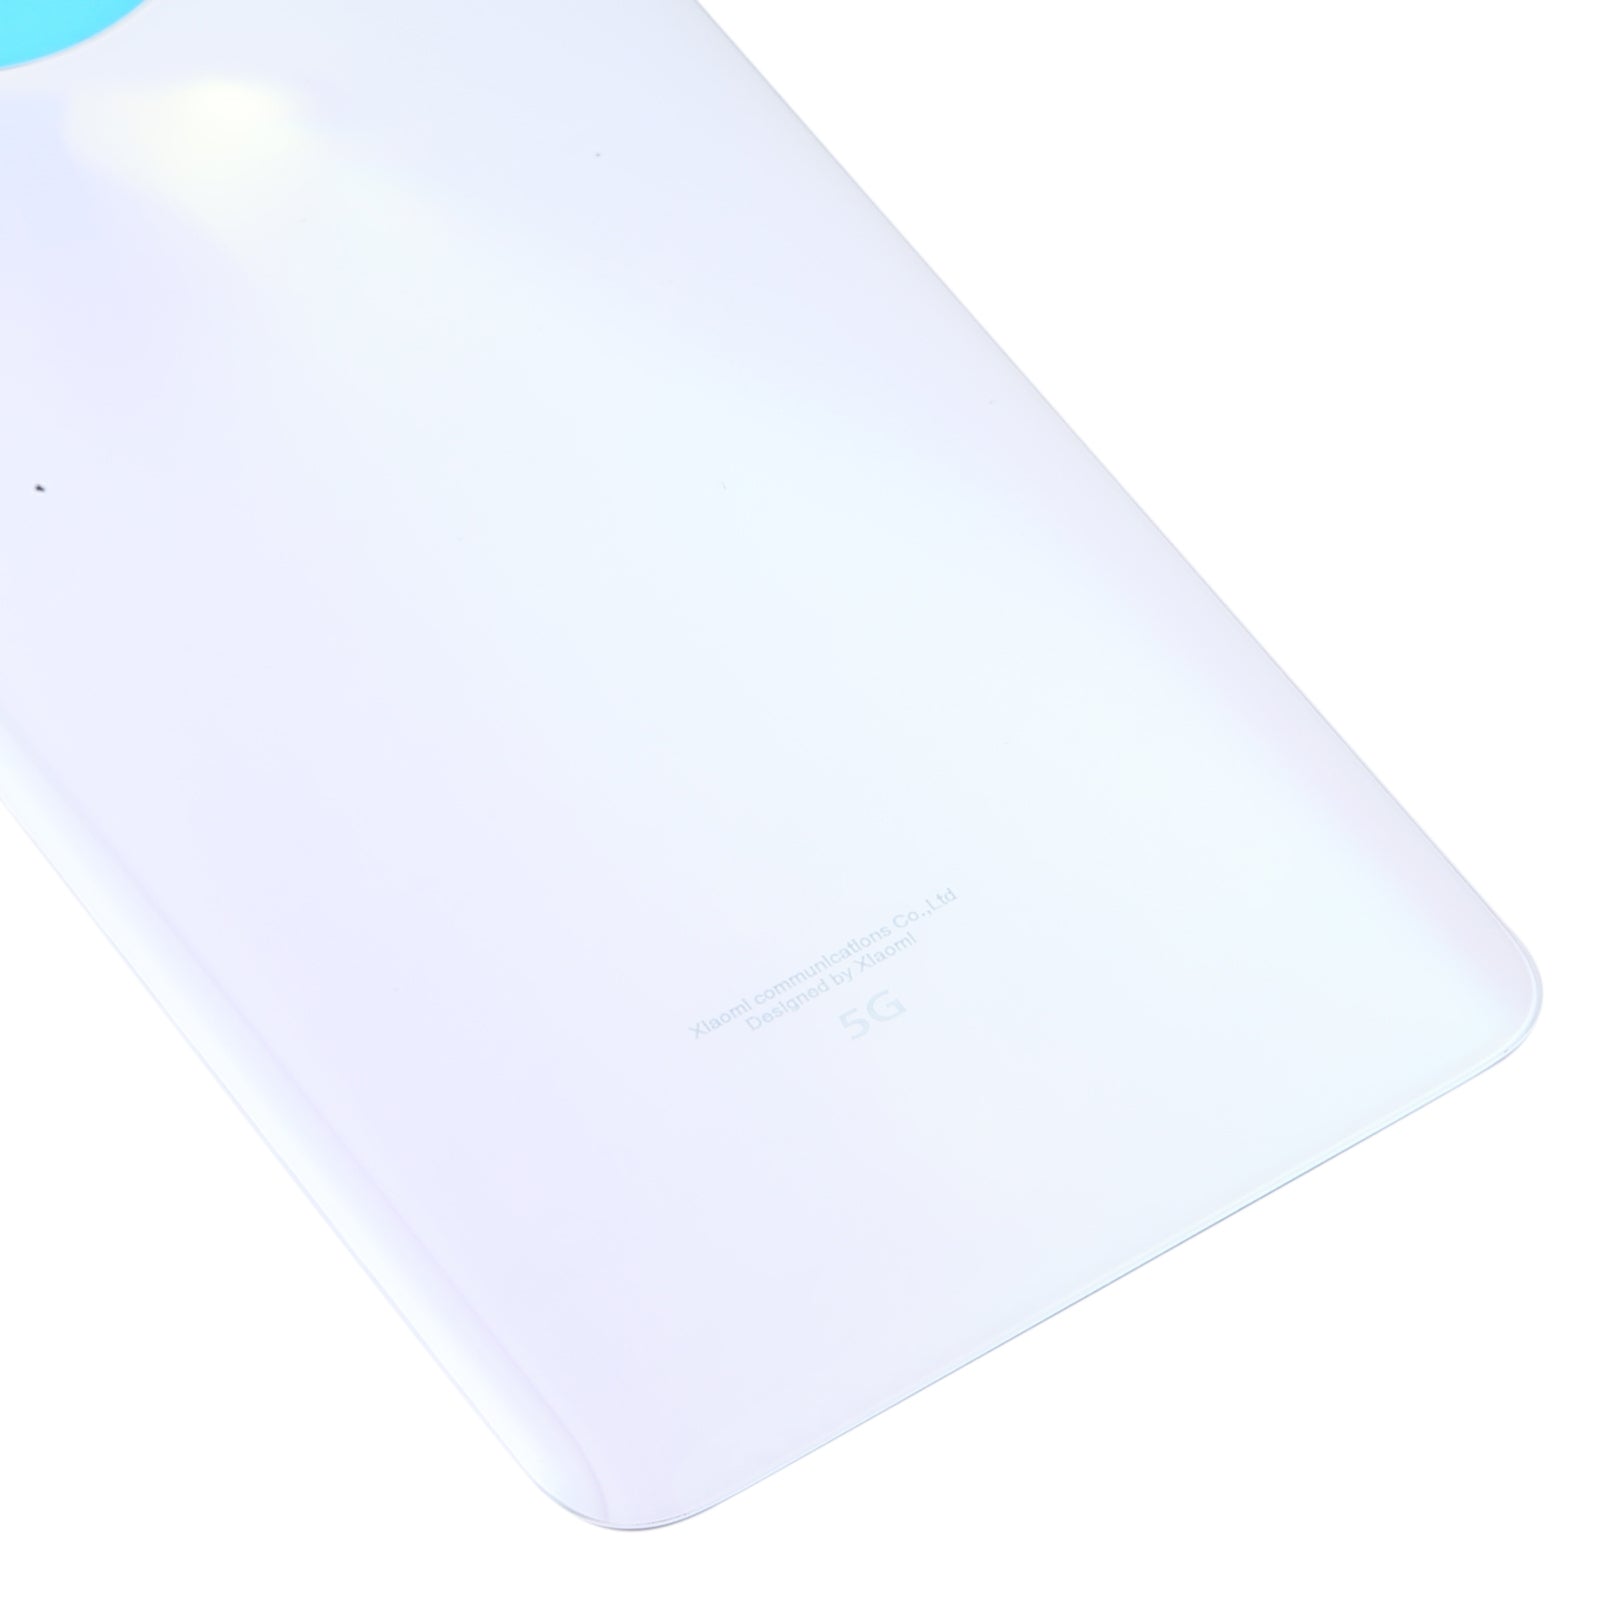 Battery Cover Back Cover Xiaomi Redmi Note 9 Pro 5G / Mi 10T Lite 5G White